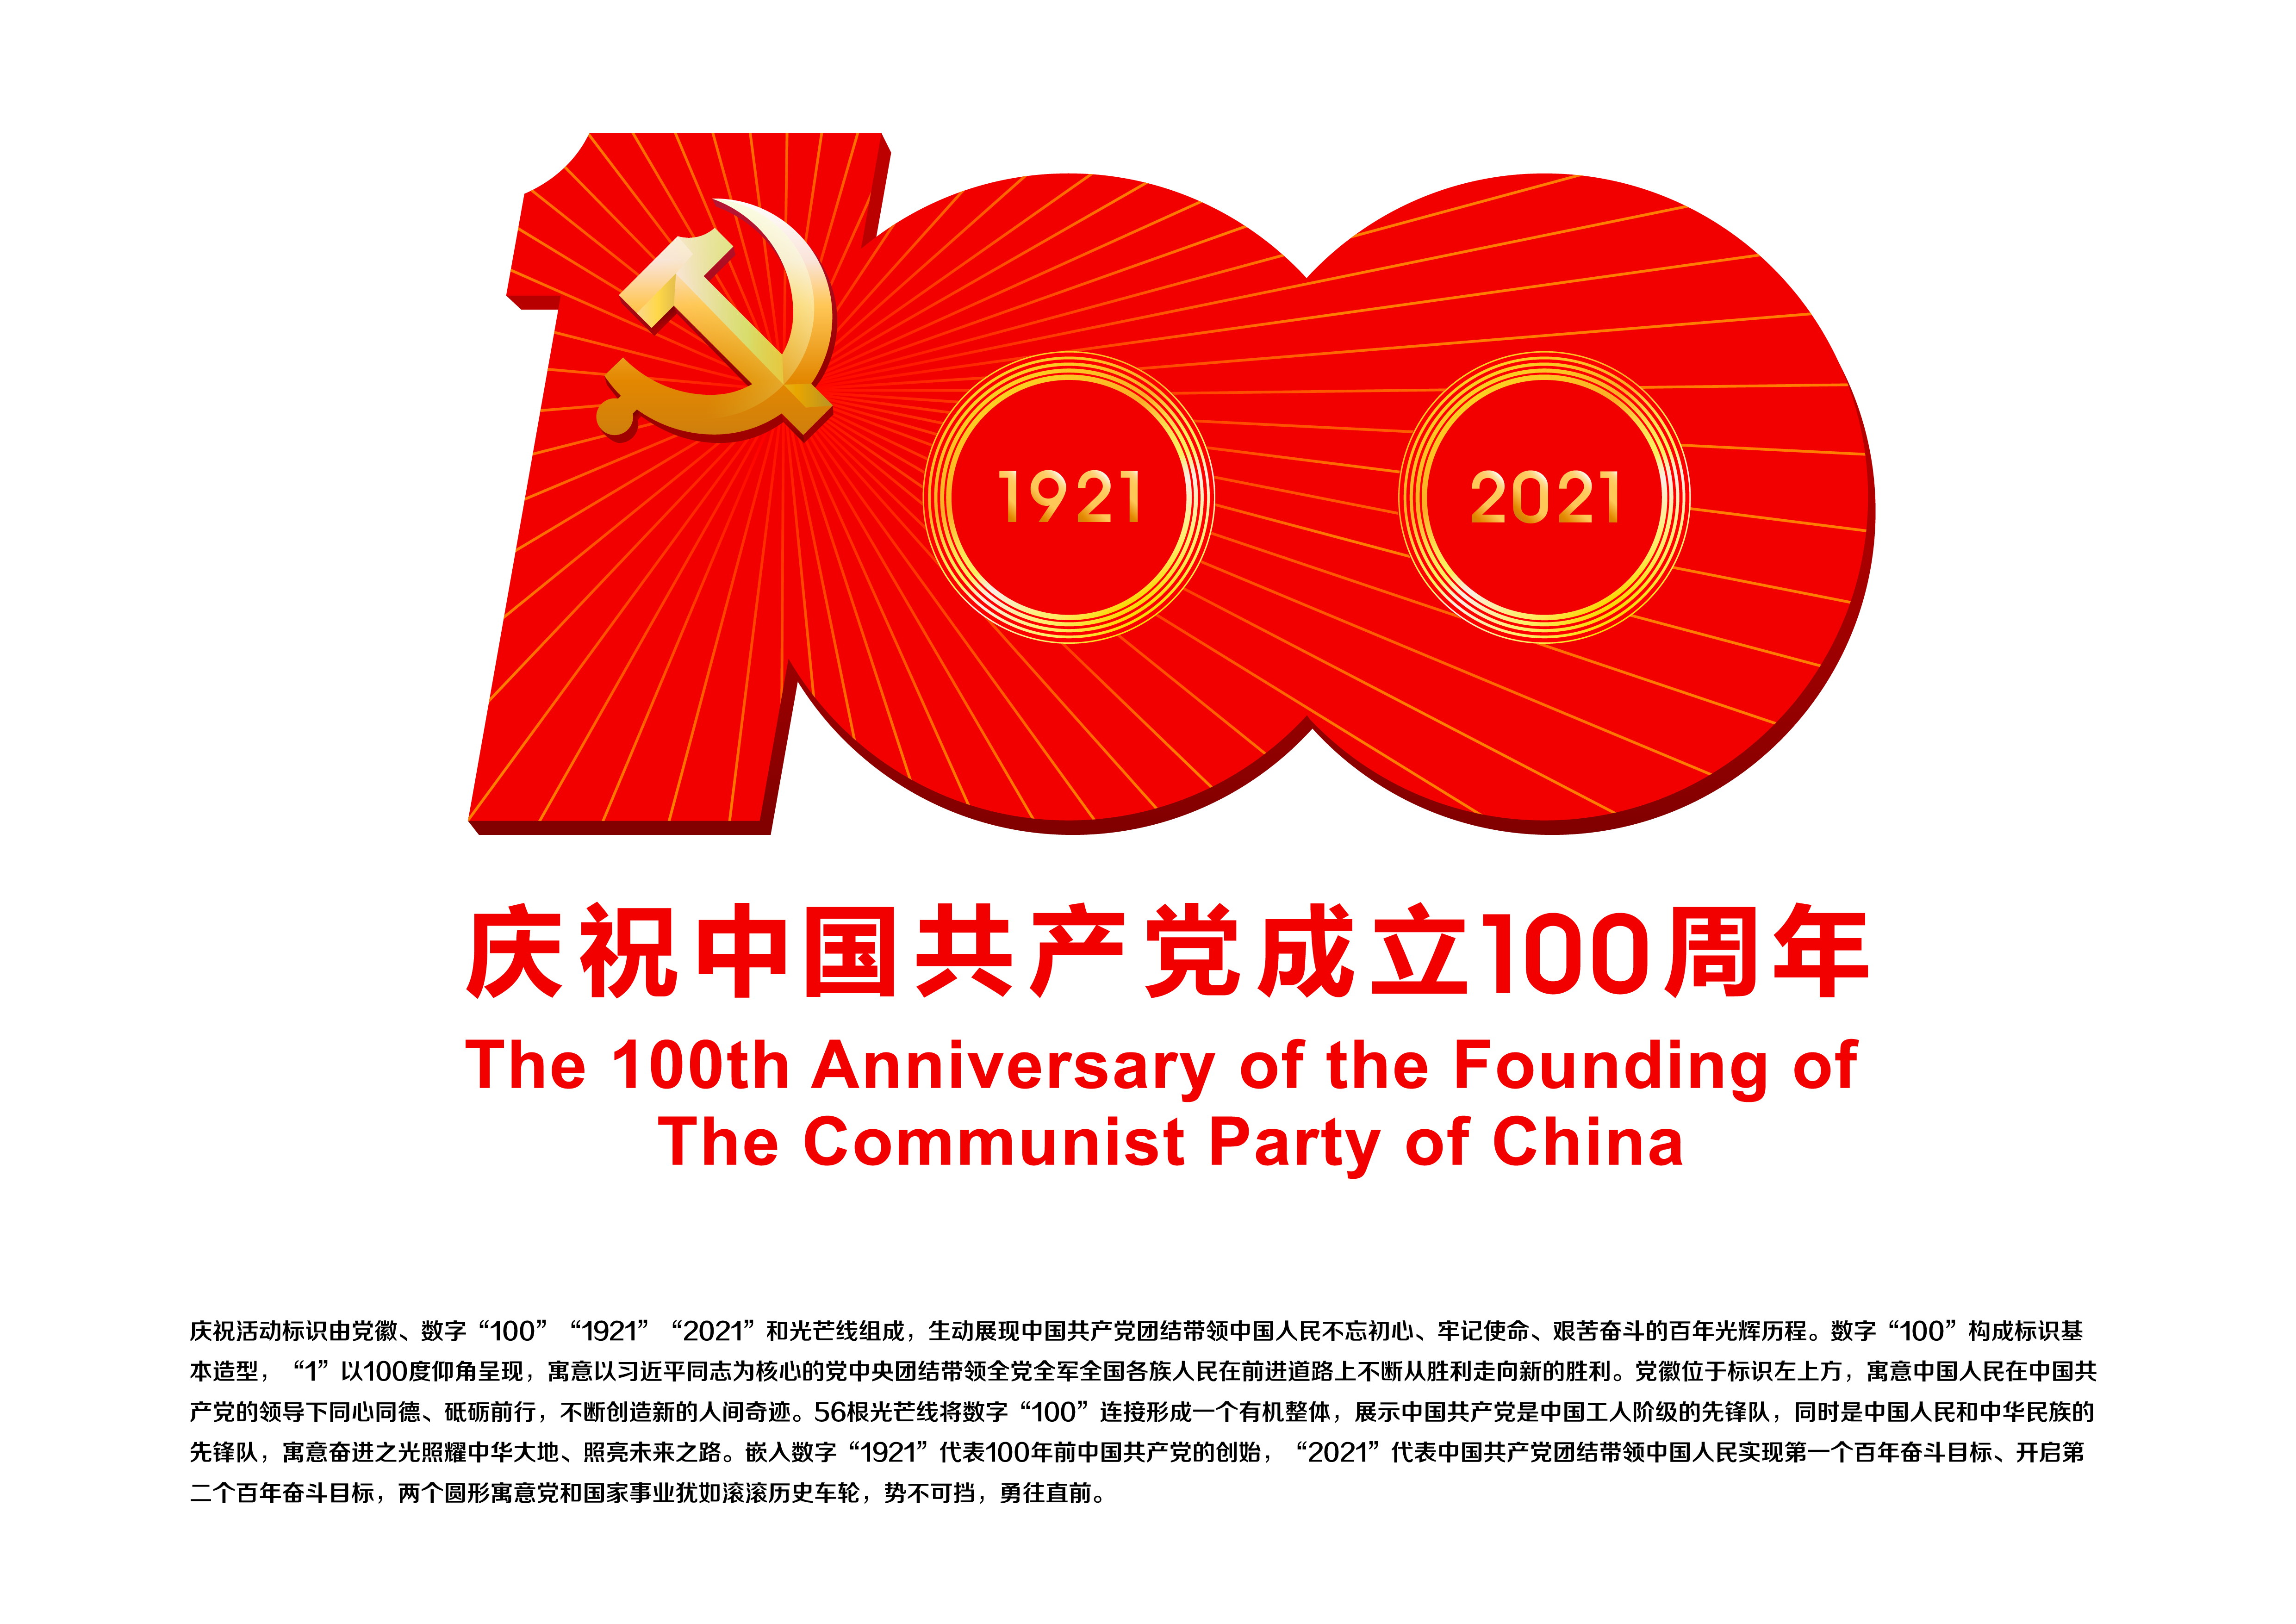 中国共产党成立100周年庆祝活动标识设计说明.jpg